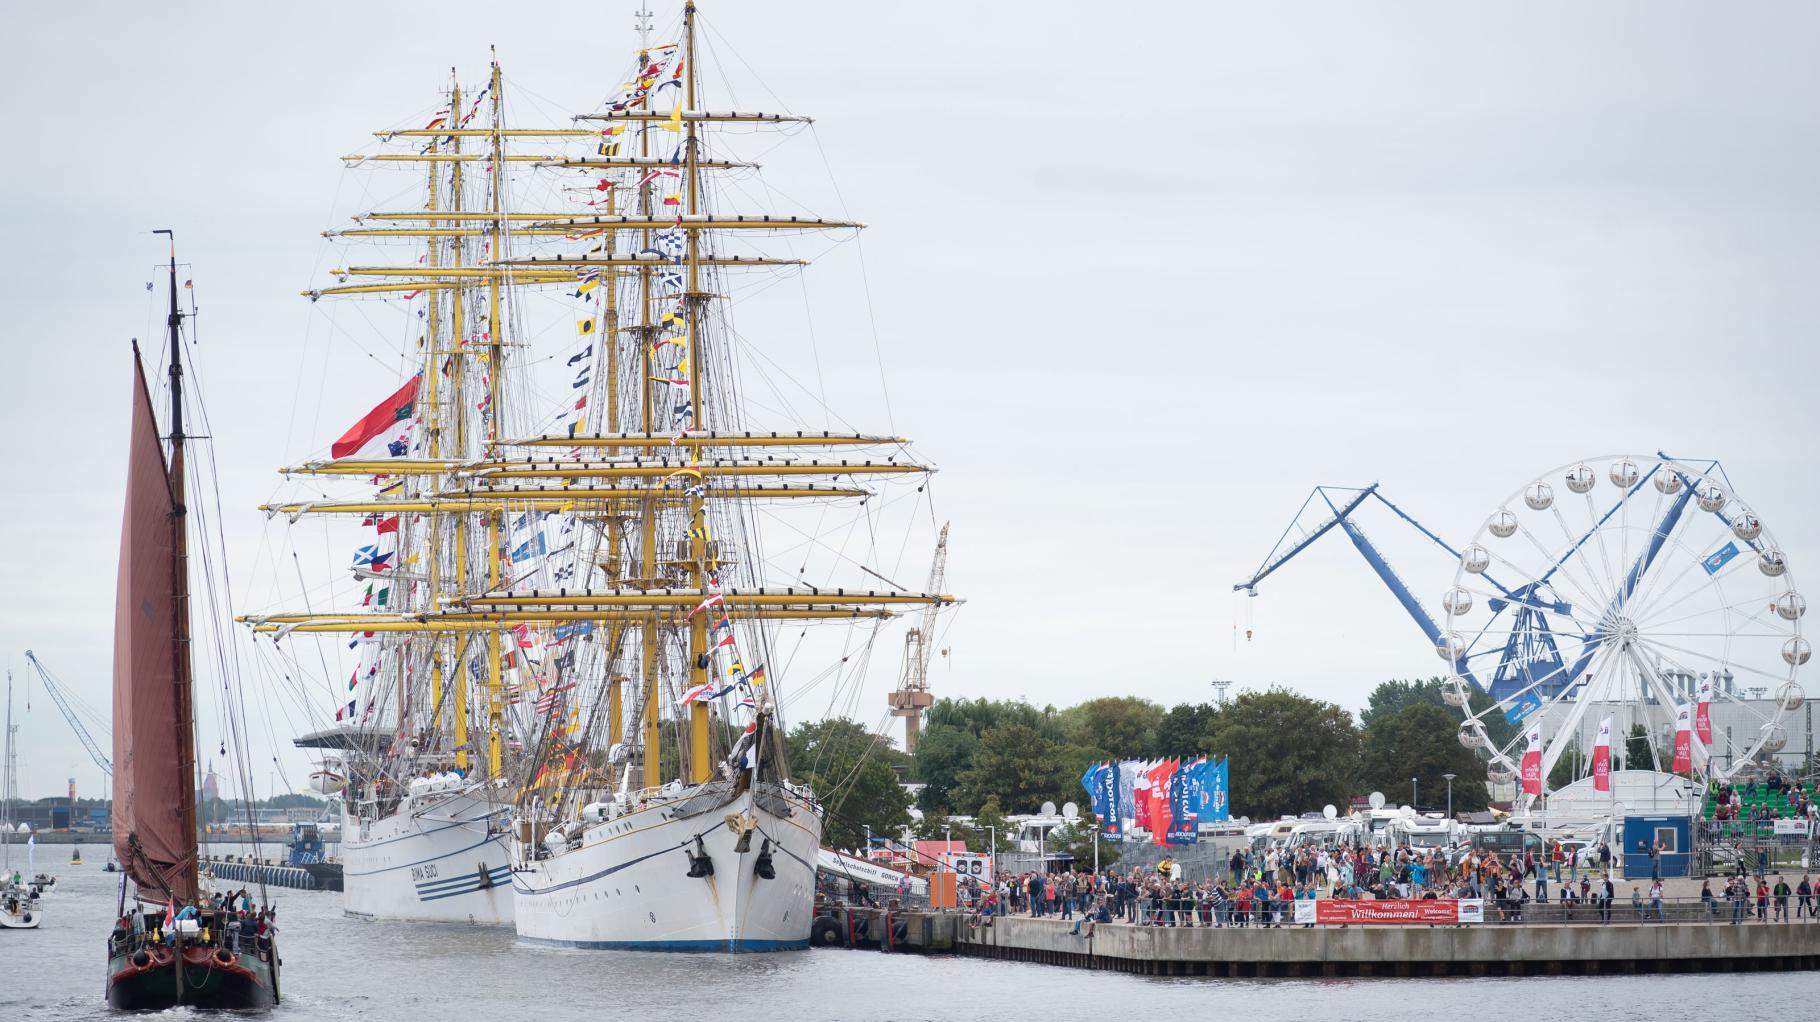 Traditionssegler, Trubel, Partystimmung: Sail lockt an Rostocks Kaikanten zum Schiffegucken 